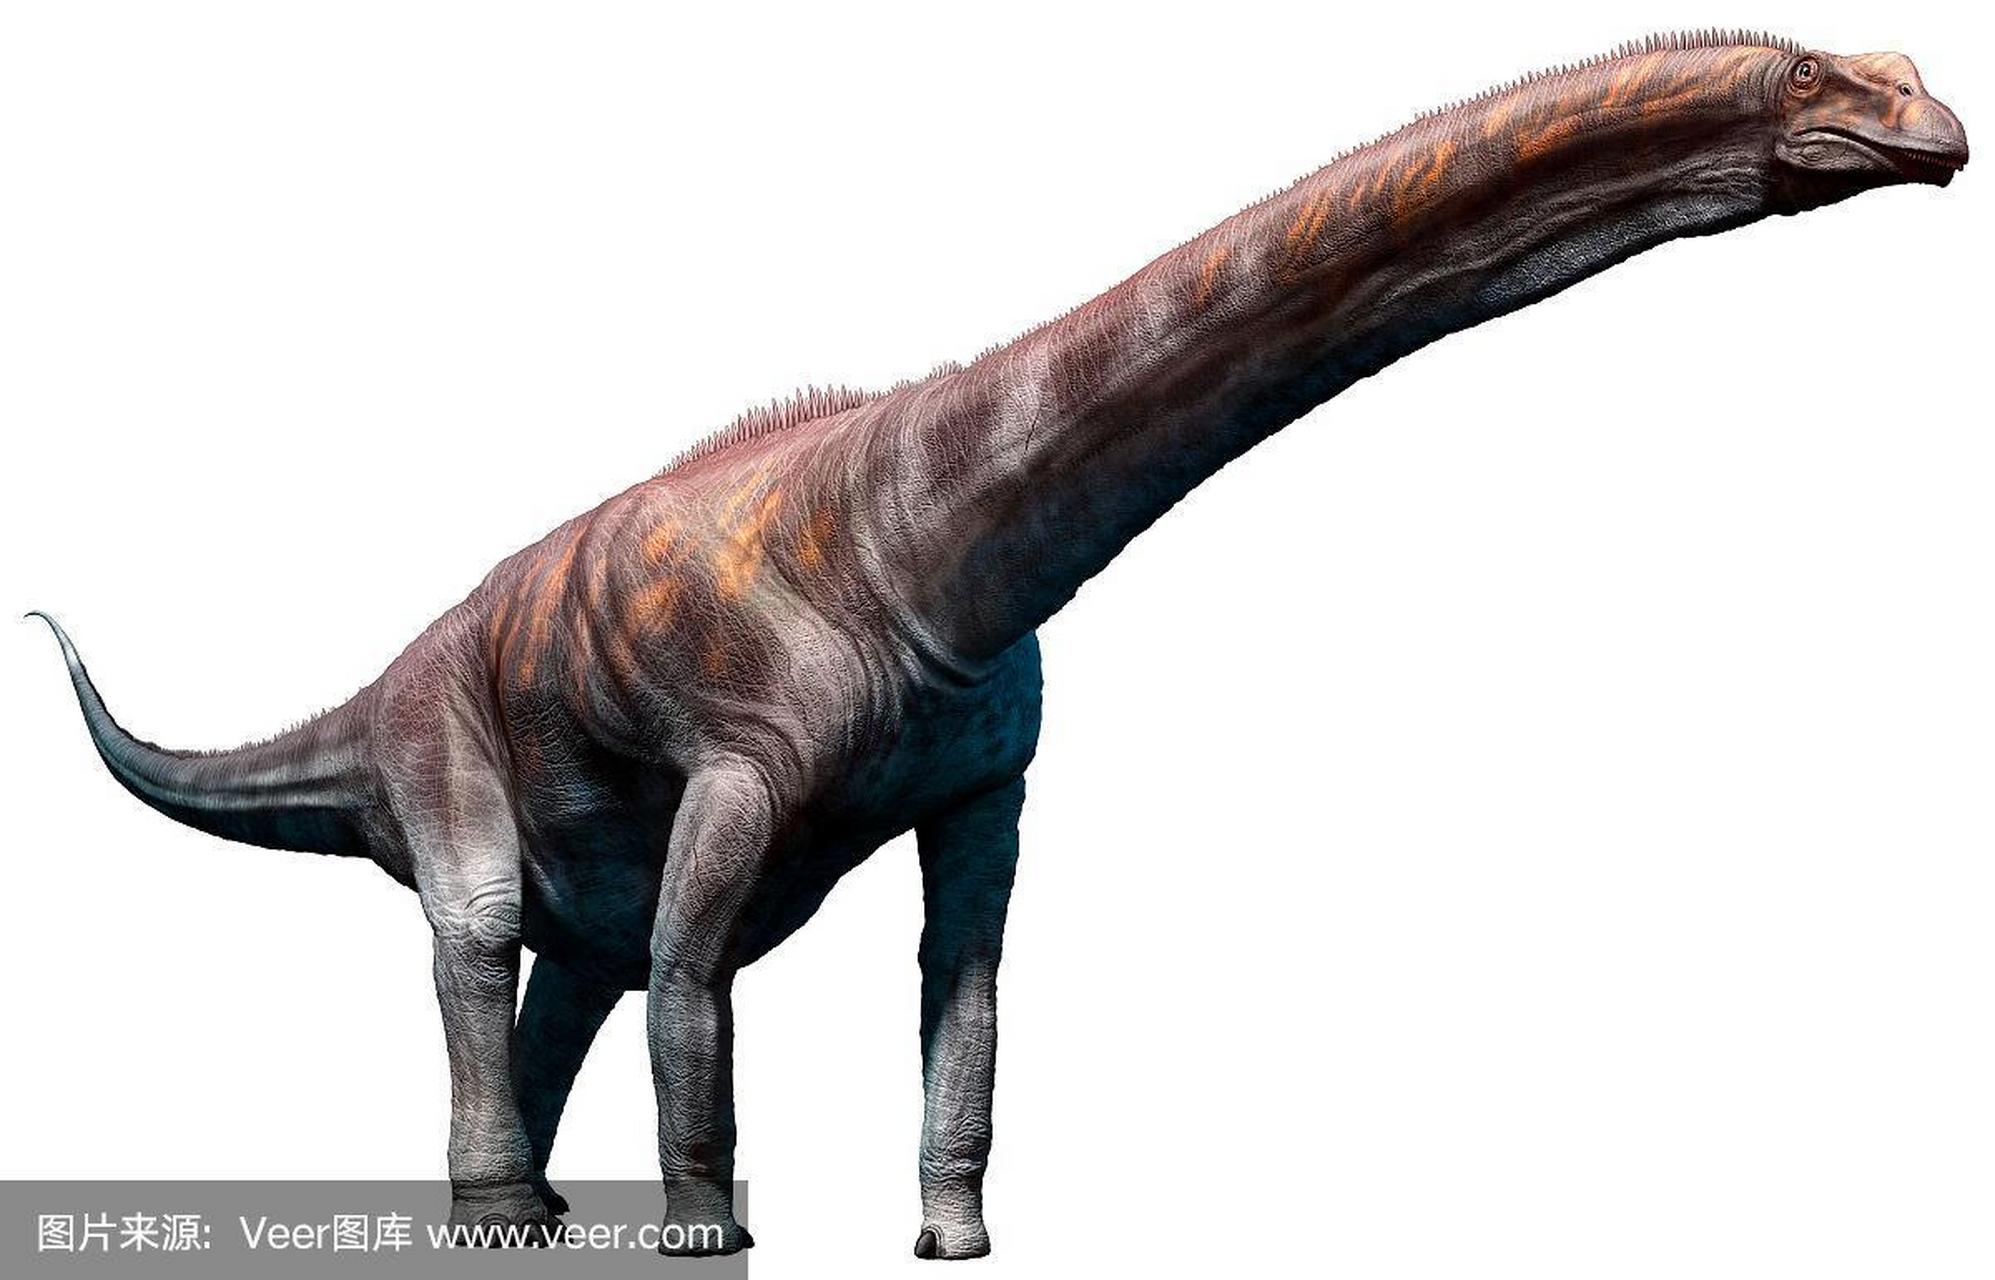 体型最庞大的食草恐龙之一——阿根廷龙         哇,这个大家伙真的是